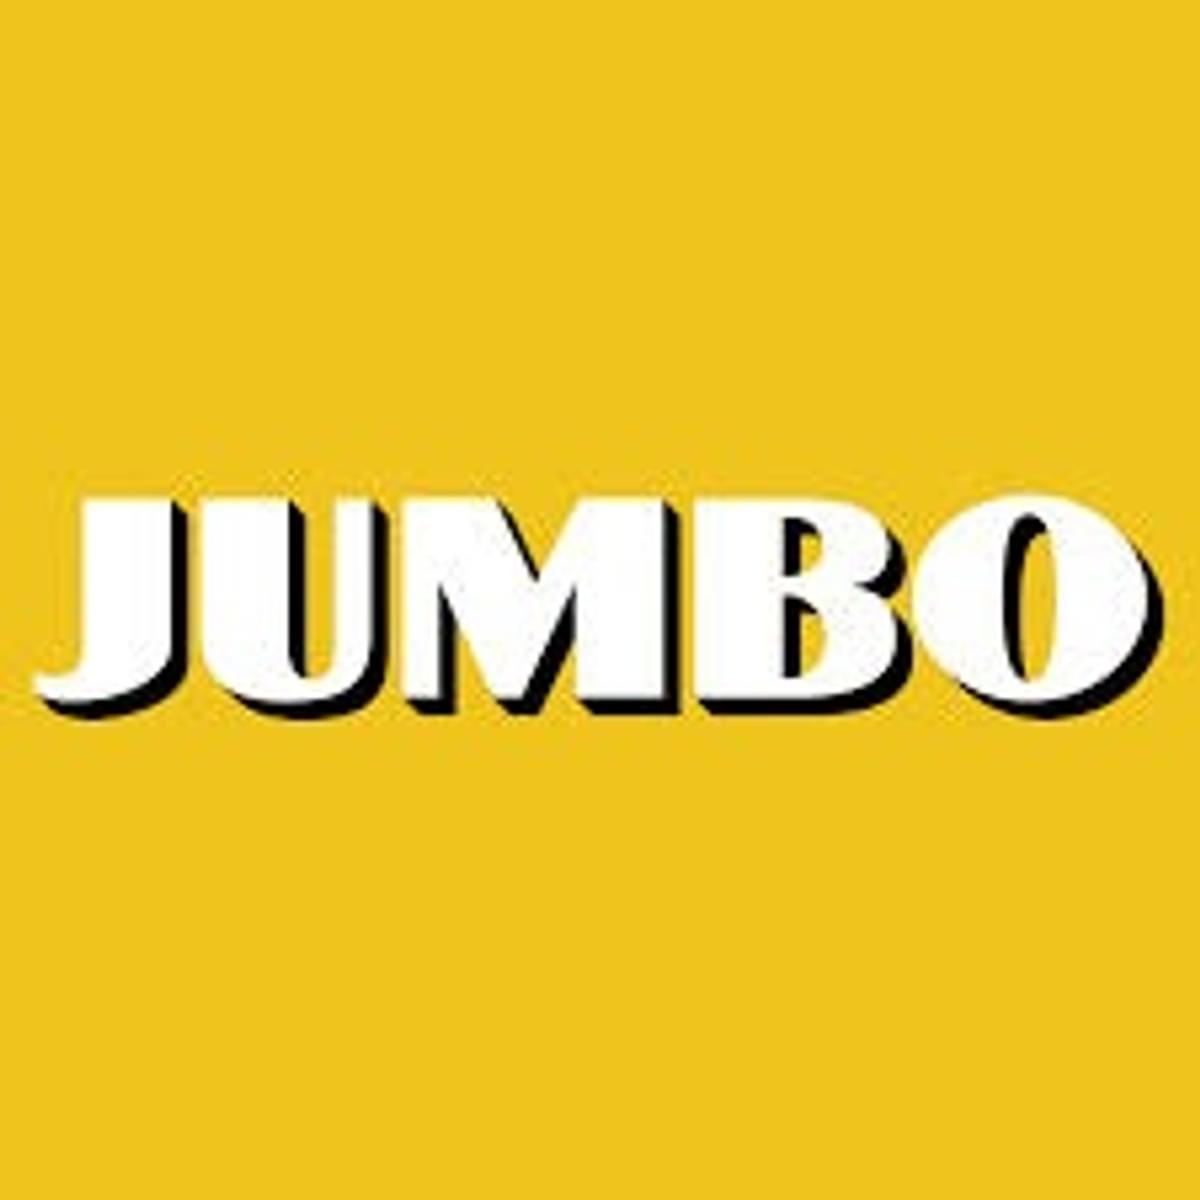 Jumbo start experiment met slimme winkelwagen image